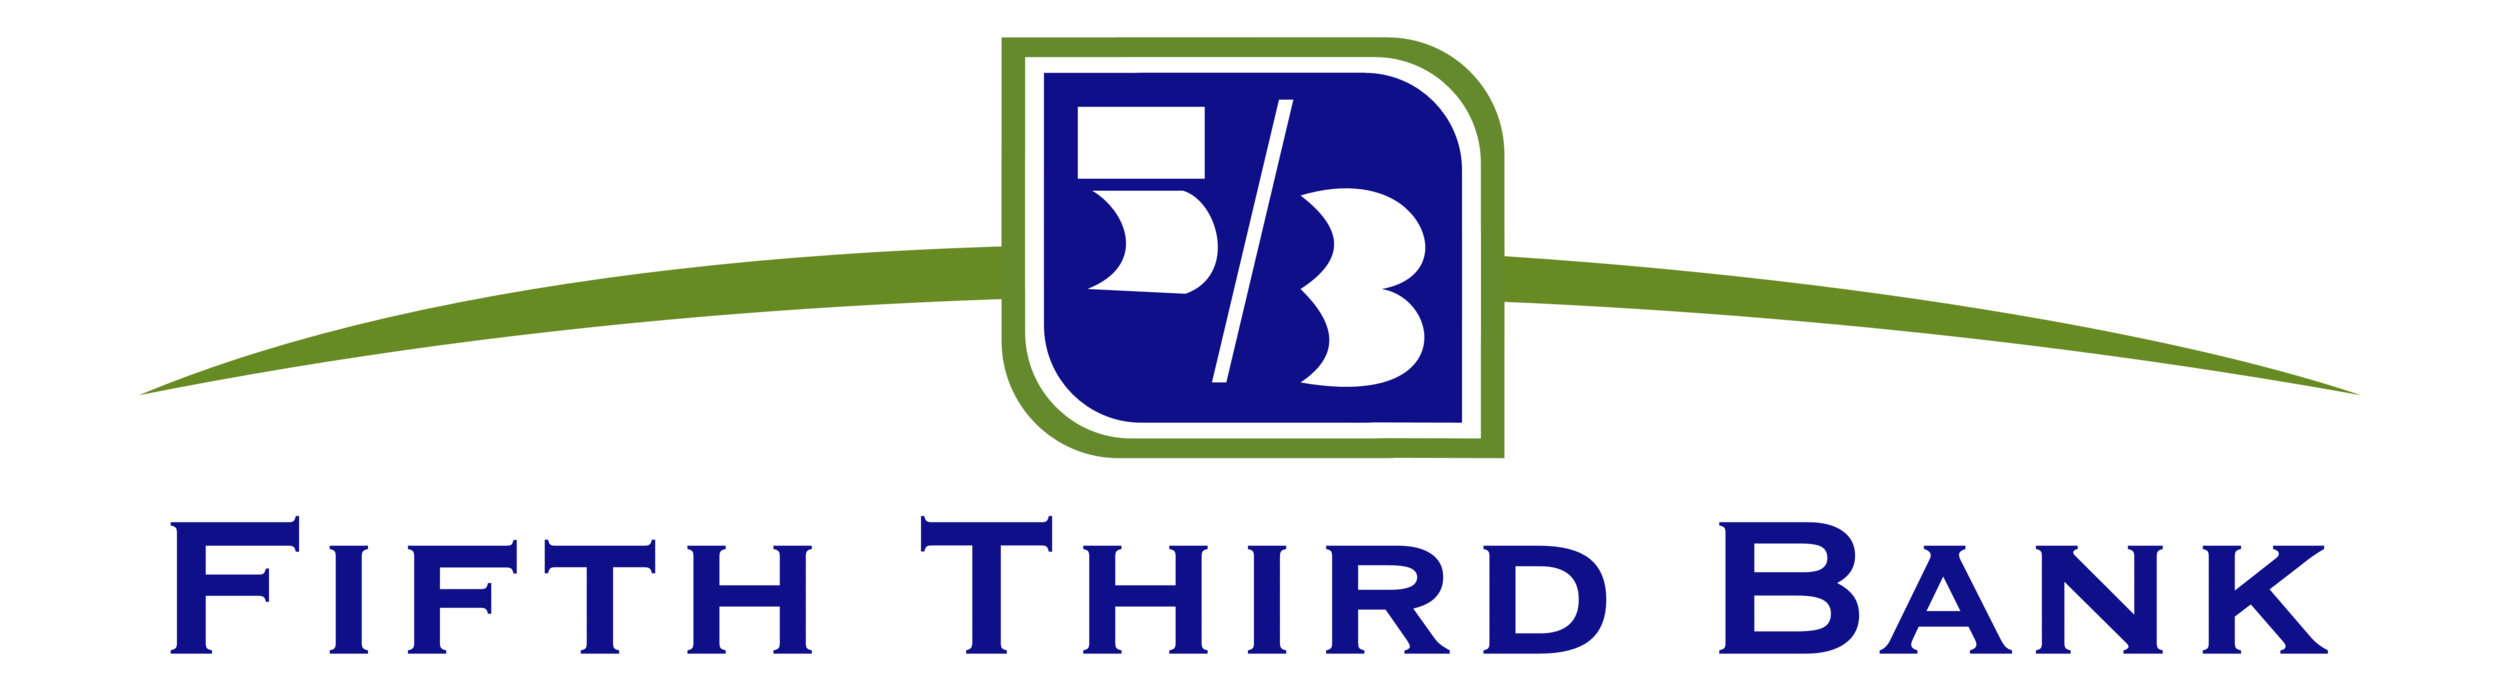 Fifth_Third_Bank_logo_logotype_emblem_5_3.png